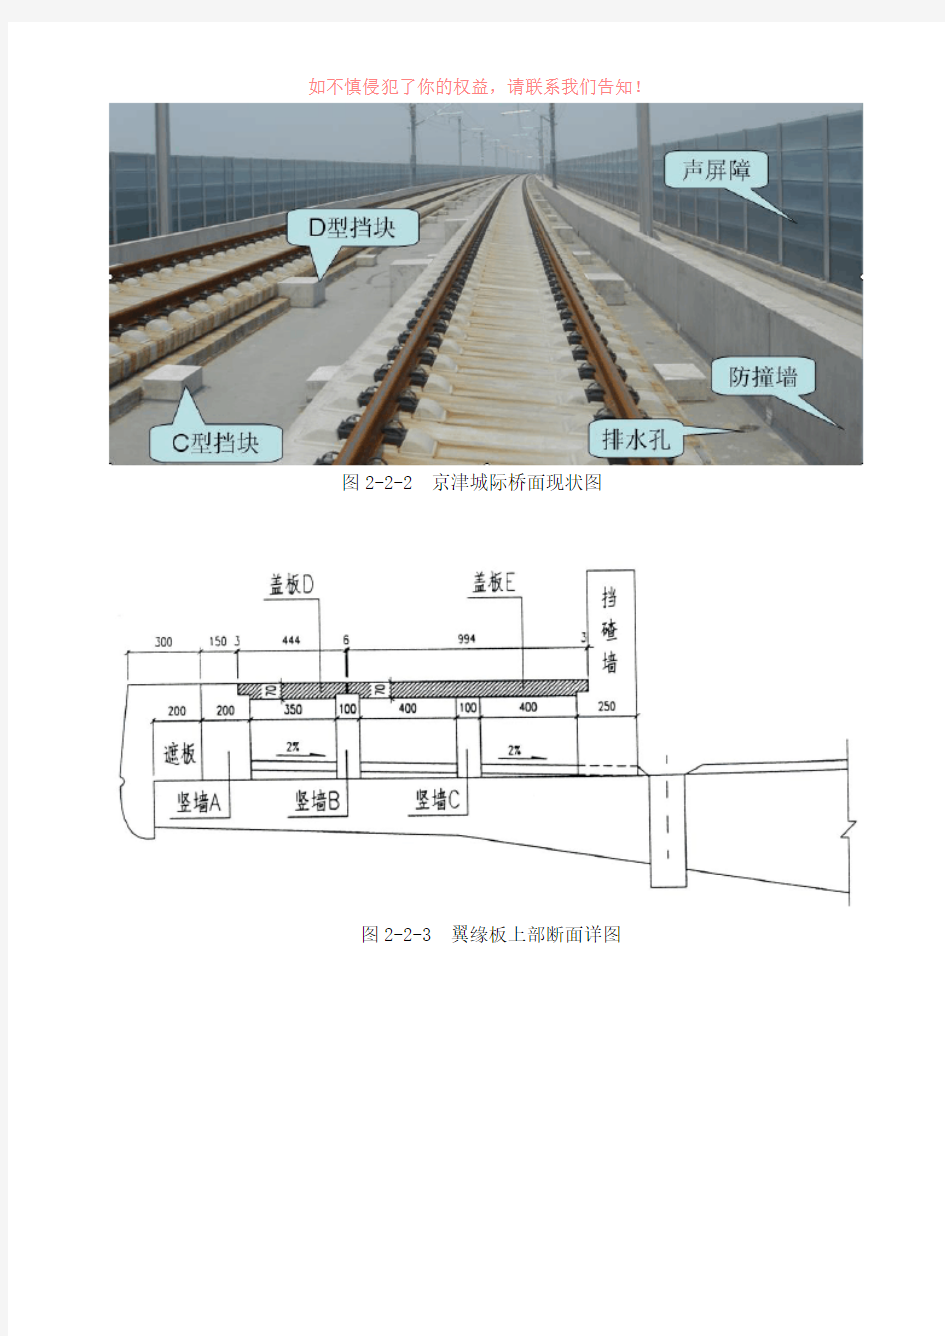 客运专线铁路桥梁构造(参考模板)